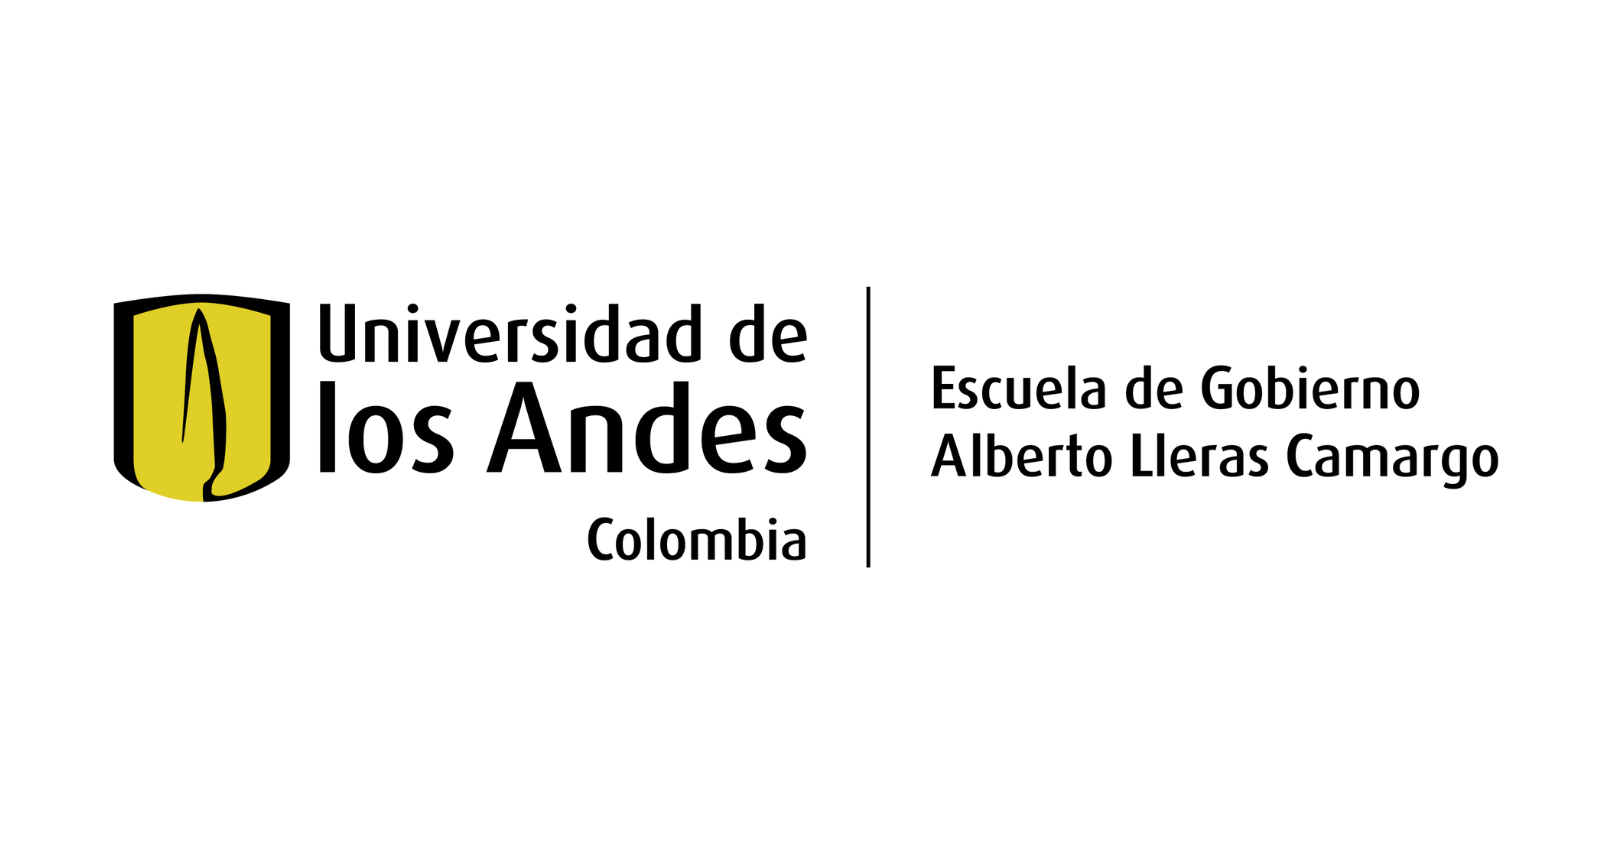 Escuela de Gobierno Alberto Lleras Camargo - Universidad de los Andes